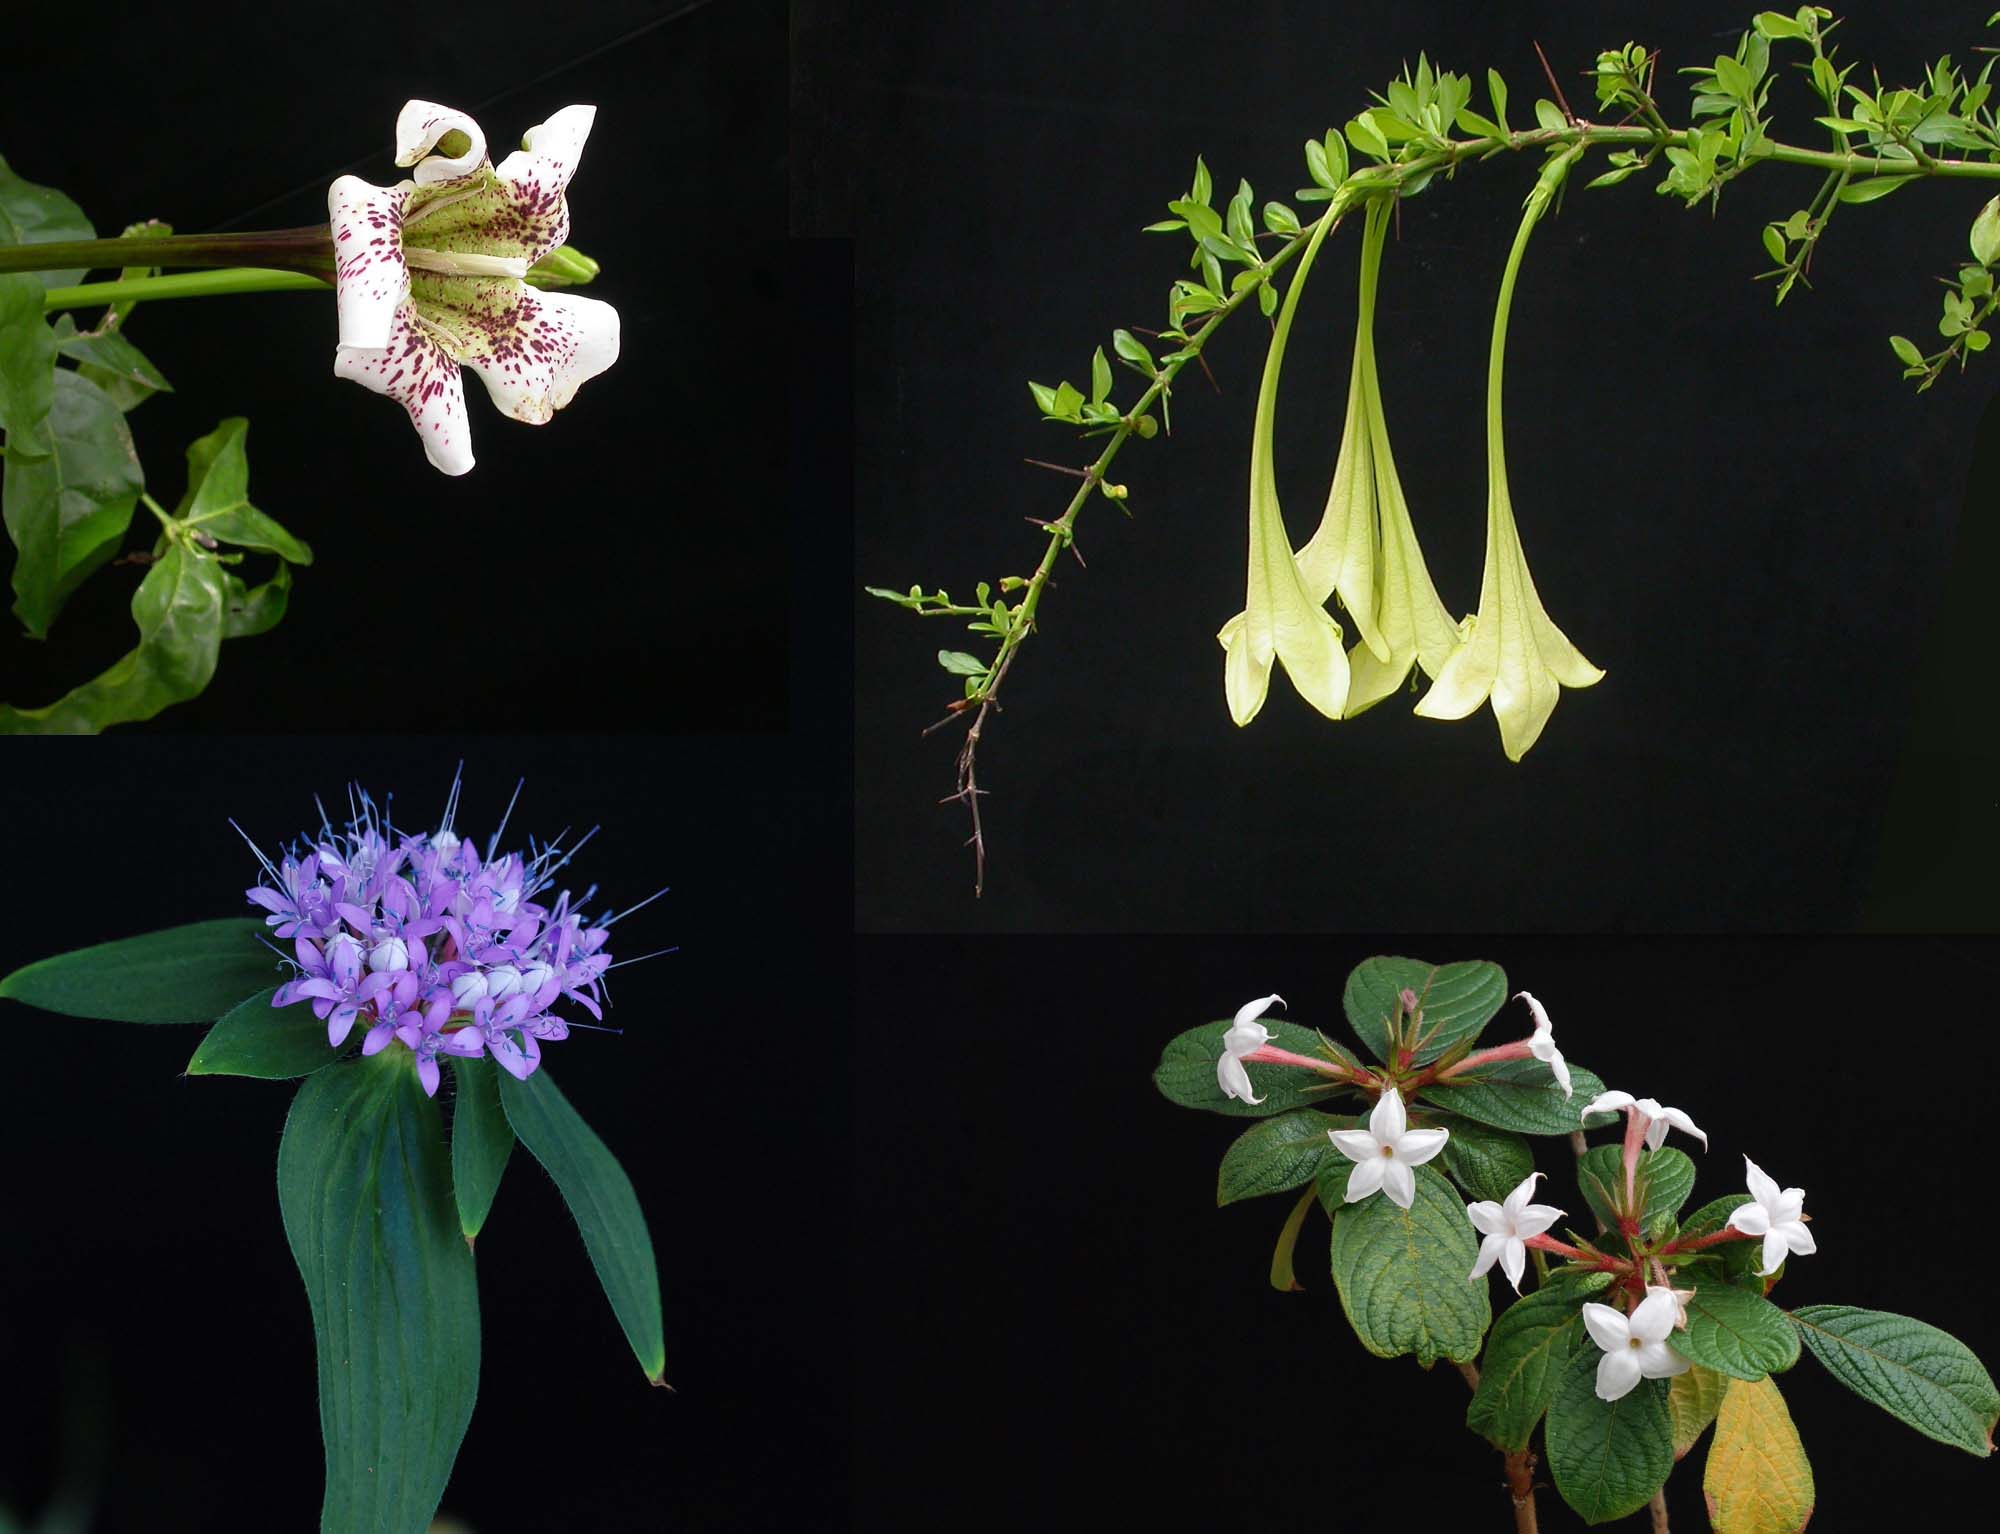 Kleine selectie planten uit de koffiefamilie. Rubiaceae kunnen vele vormen en kleuren aannemen. Agentschap Plantentuin Meise.